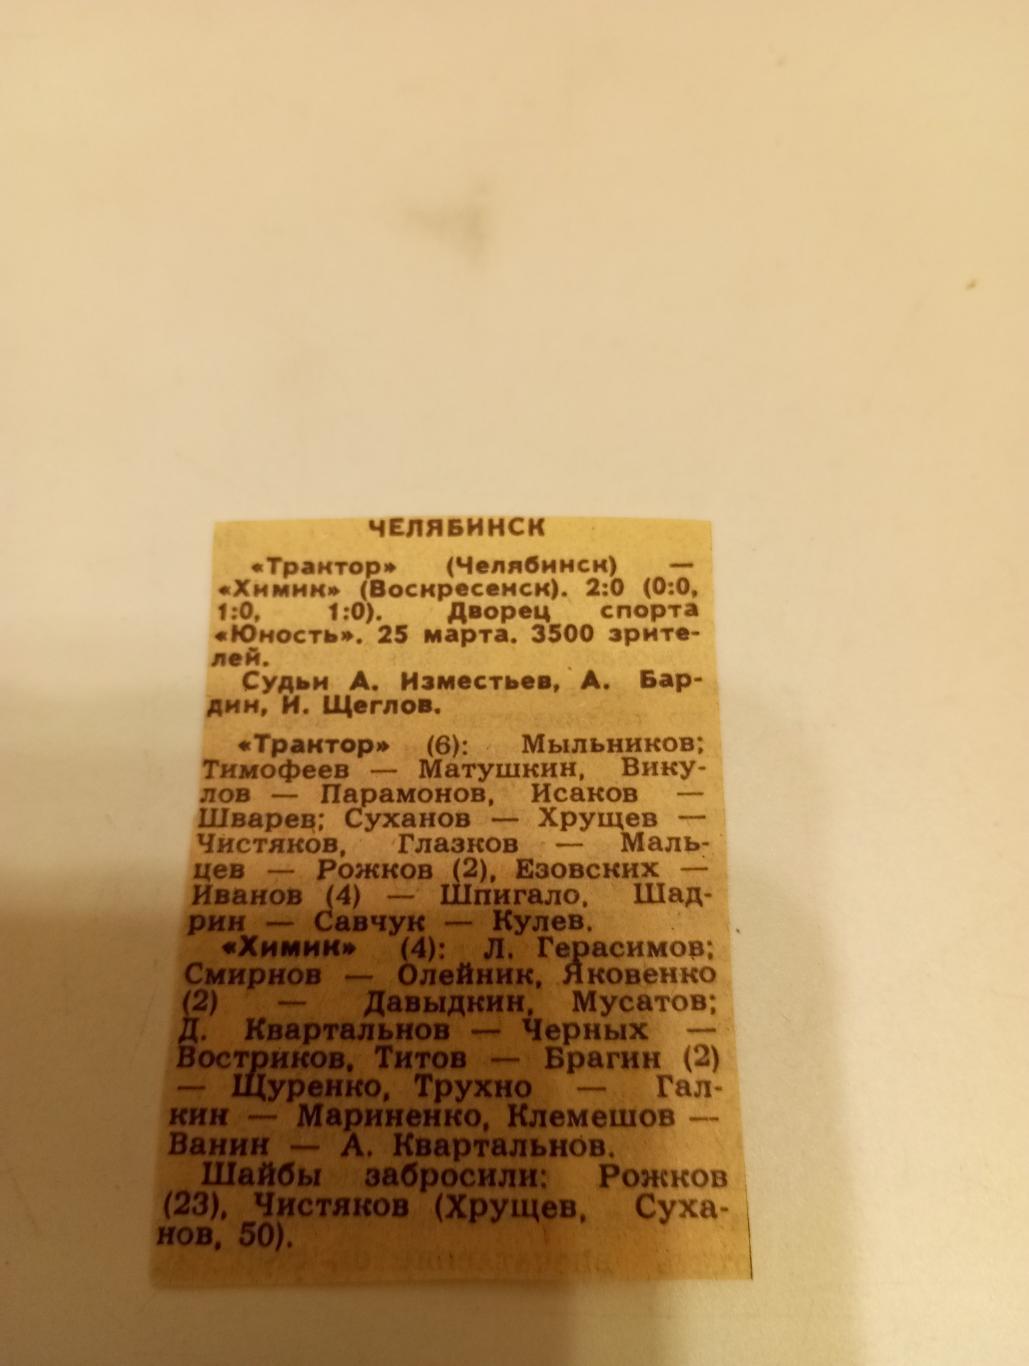 Трактор (Челябинск) -Химик (Воскресенск).25.03.1988. Счёт (2-0)